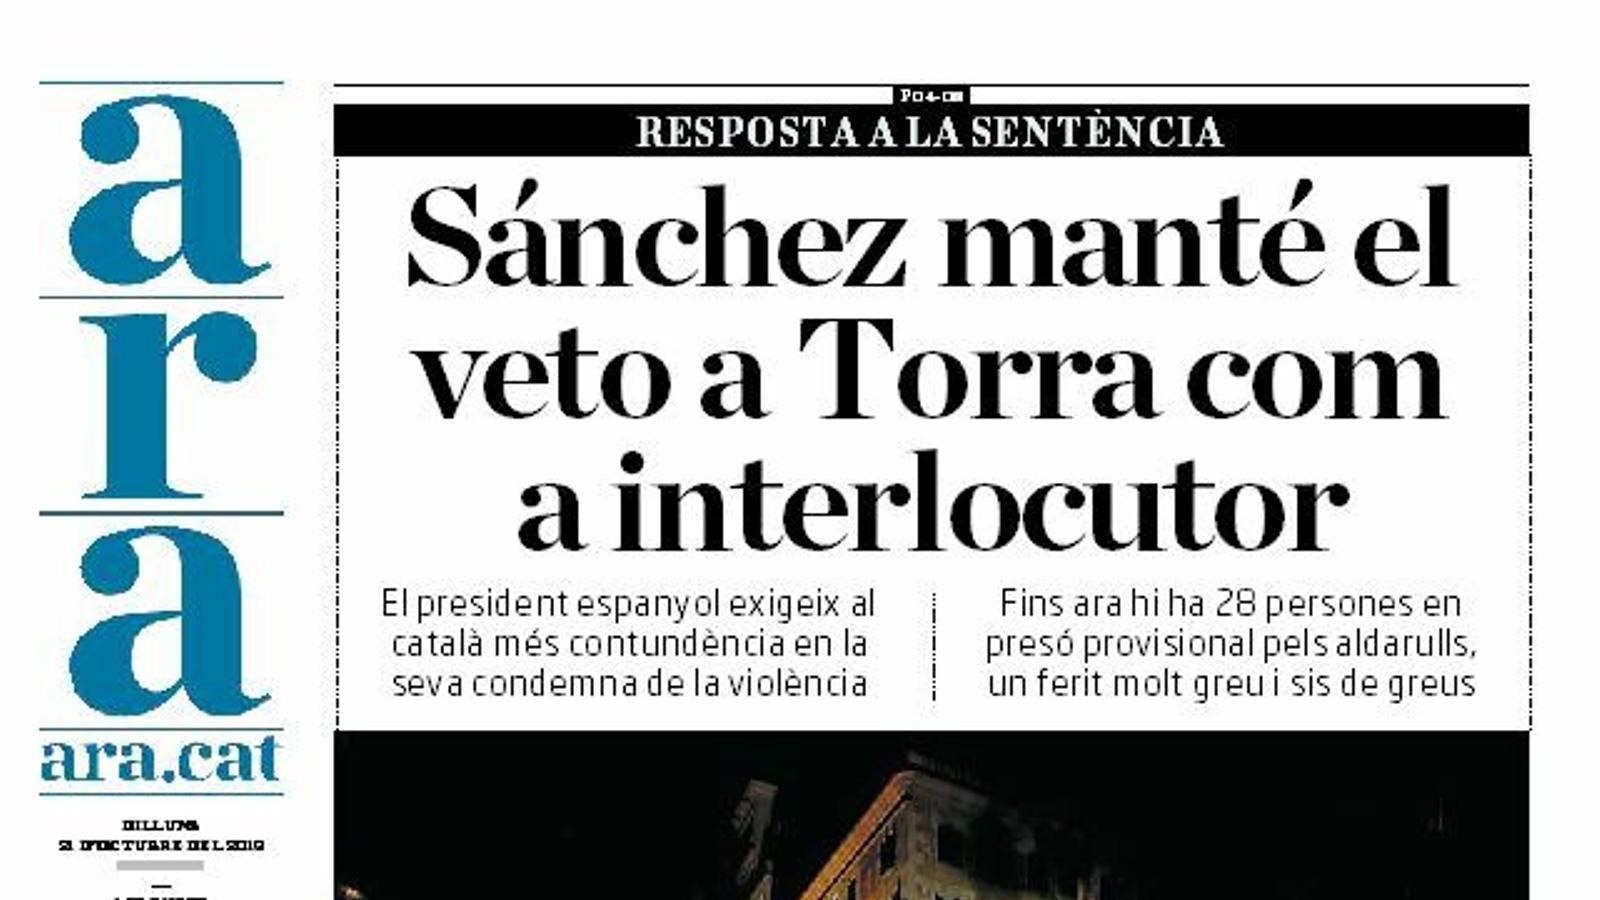 "Sánchez manté el veto a Torra com a interlocutor", portada de l'ARA